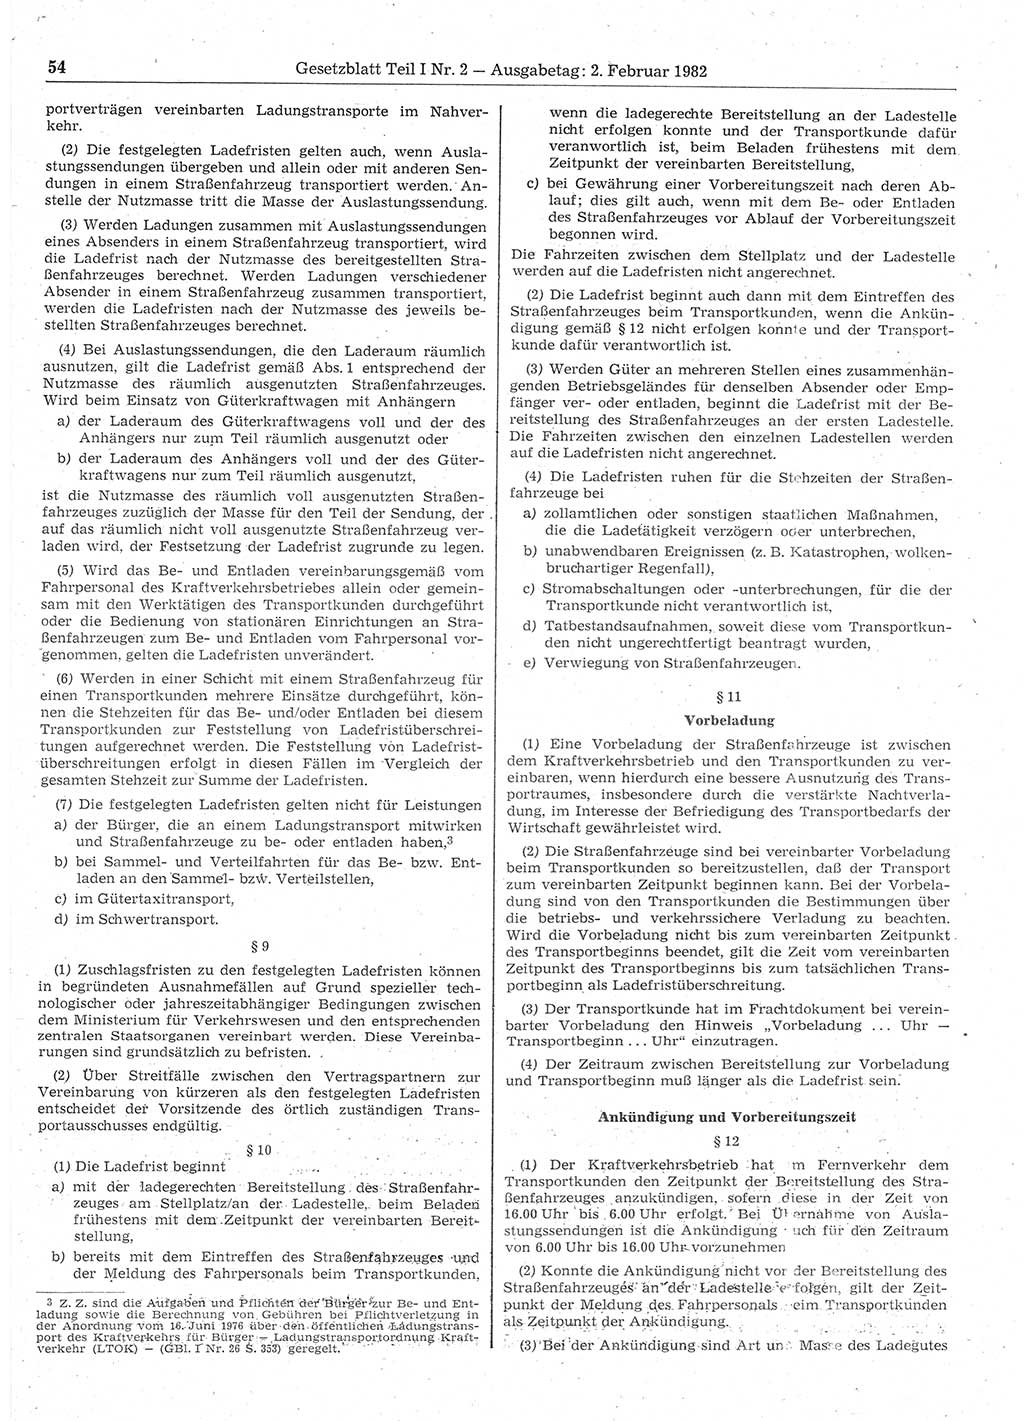 Gesetzblatt (GBl.) der Deutschen Demokratischen Republik (DDR) Teil Ⅰ 1982, Seite 54 (GBl. DDR Ⅰ 1982, S. 54)